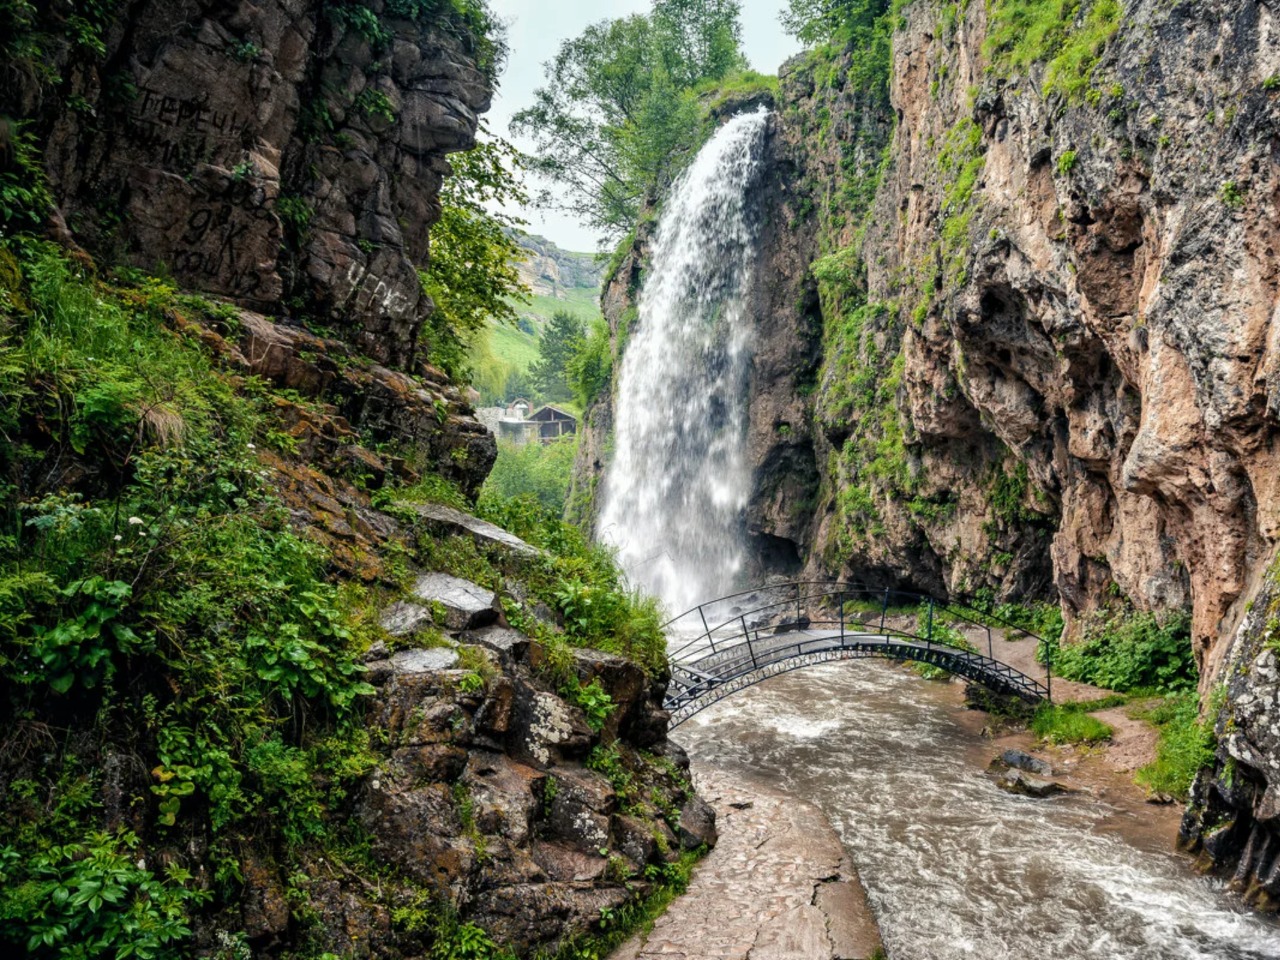 Автотур «Медовые водопады и гора Кольцо» | Цена 1700₽, отзывы, описание экскурсии